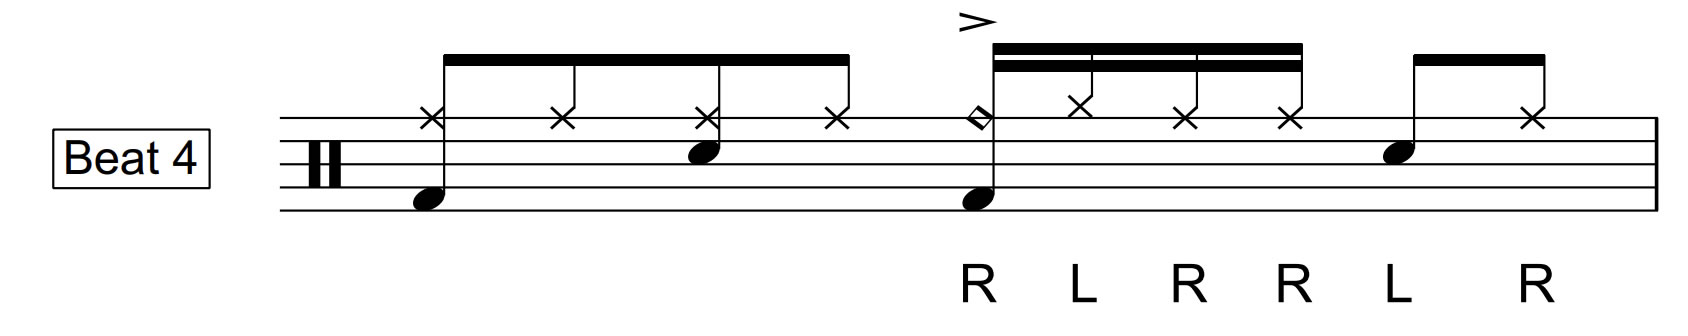 Rudiment Drum Beat